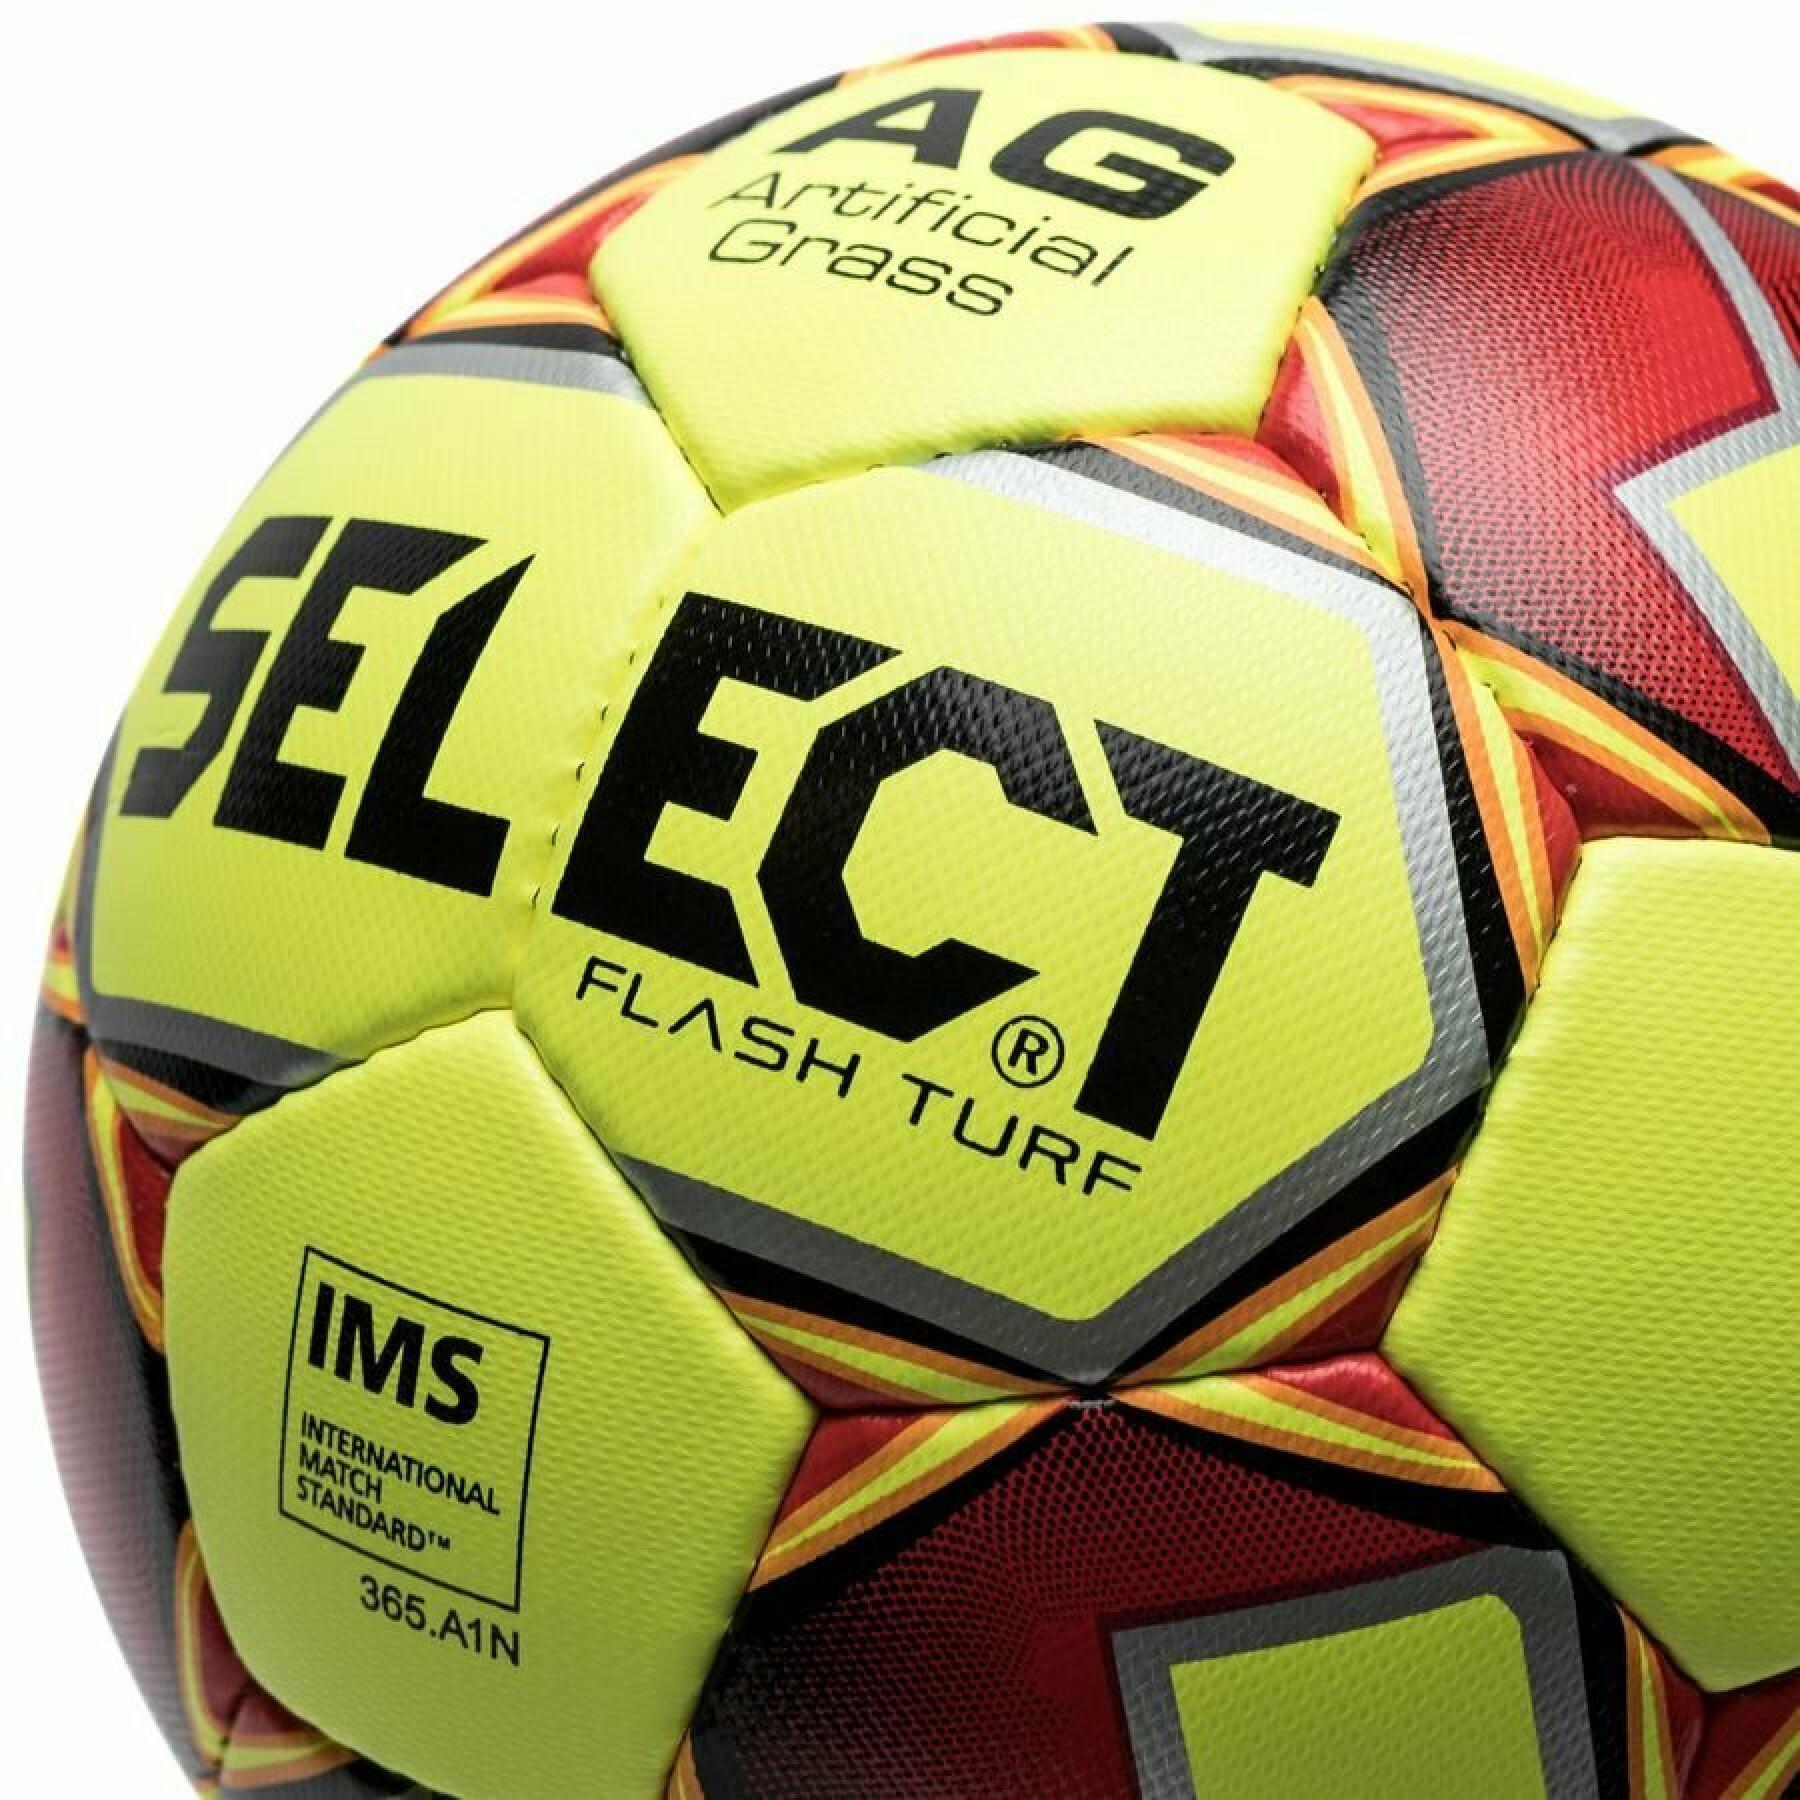 Ballong Select Flash Turf Ims